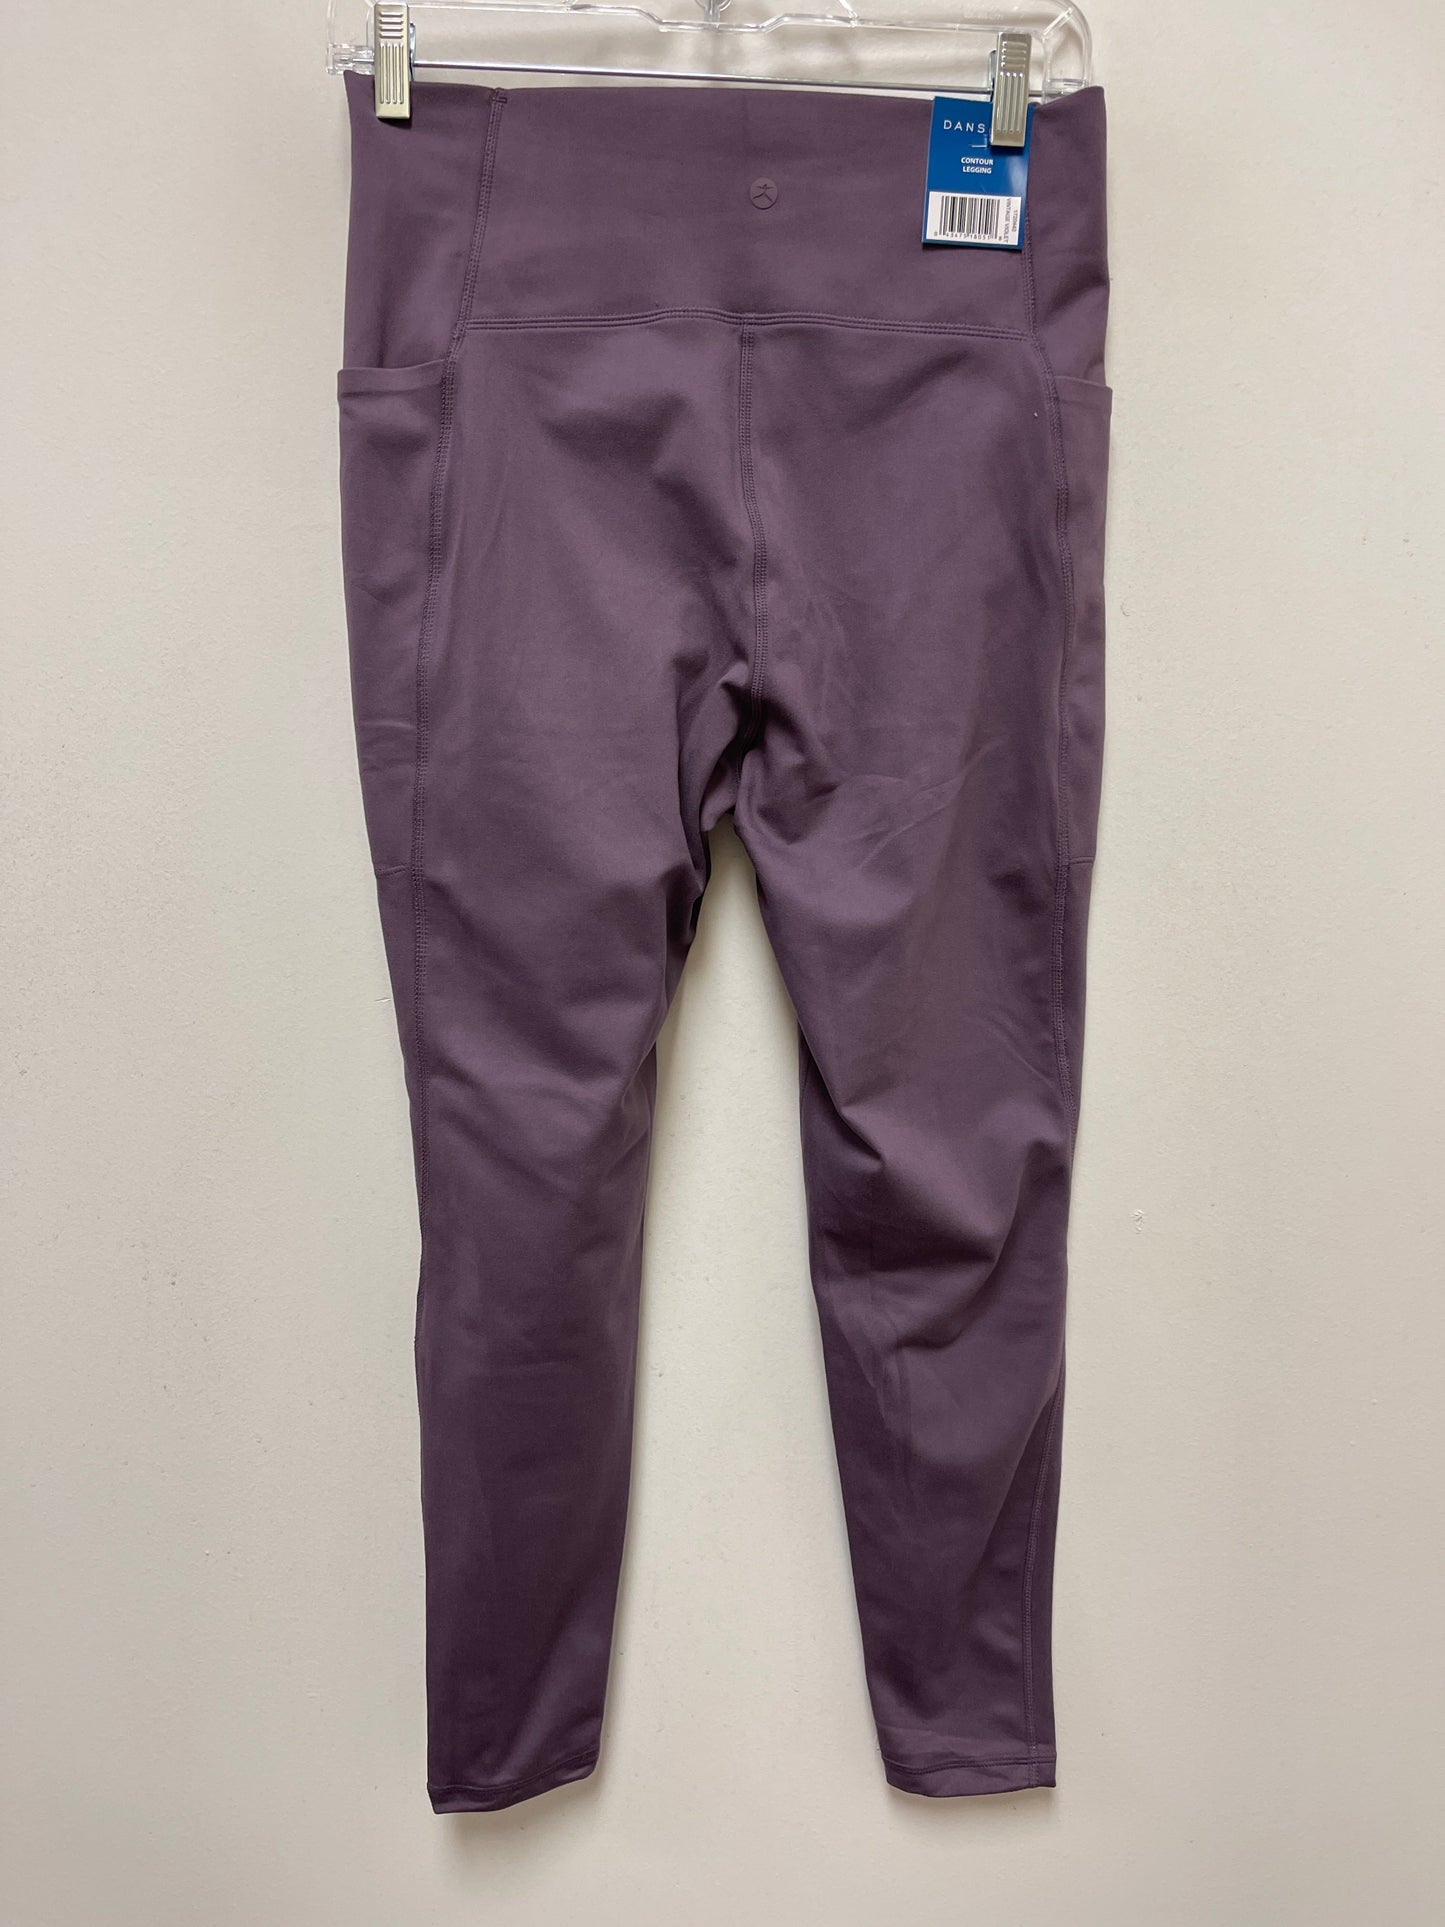 Purple Athletic Leggings Danskin, Size L